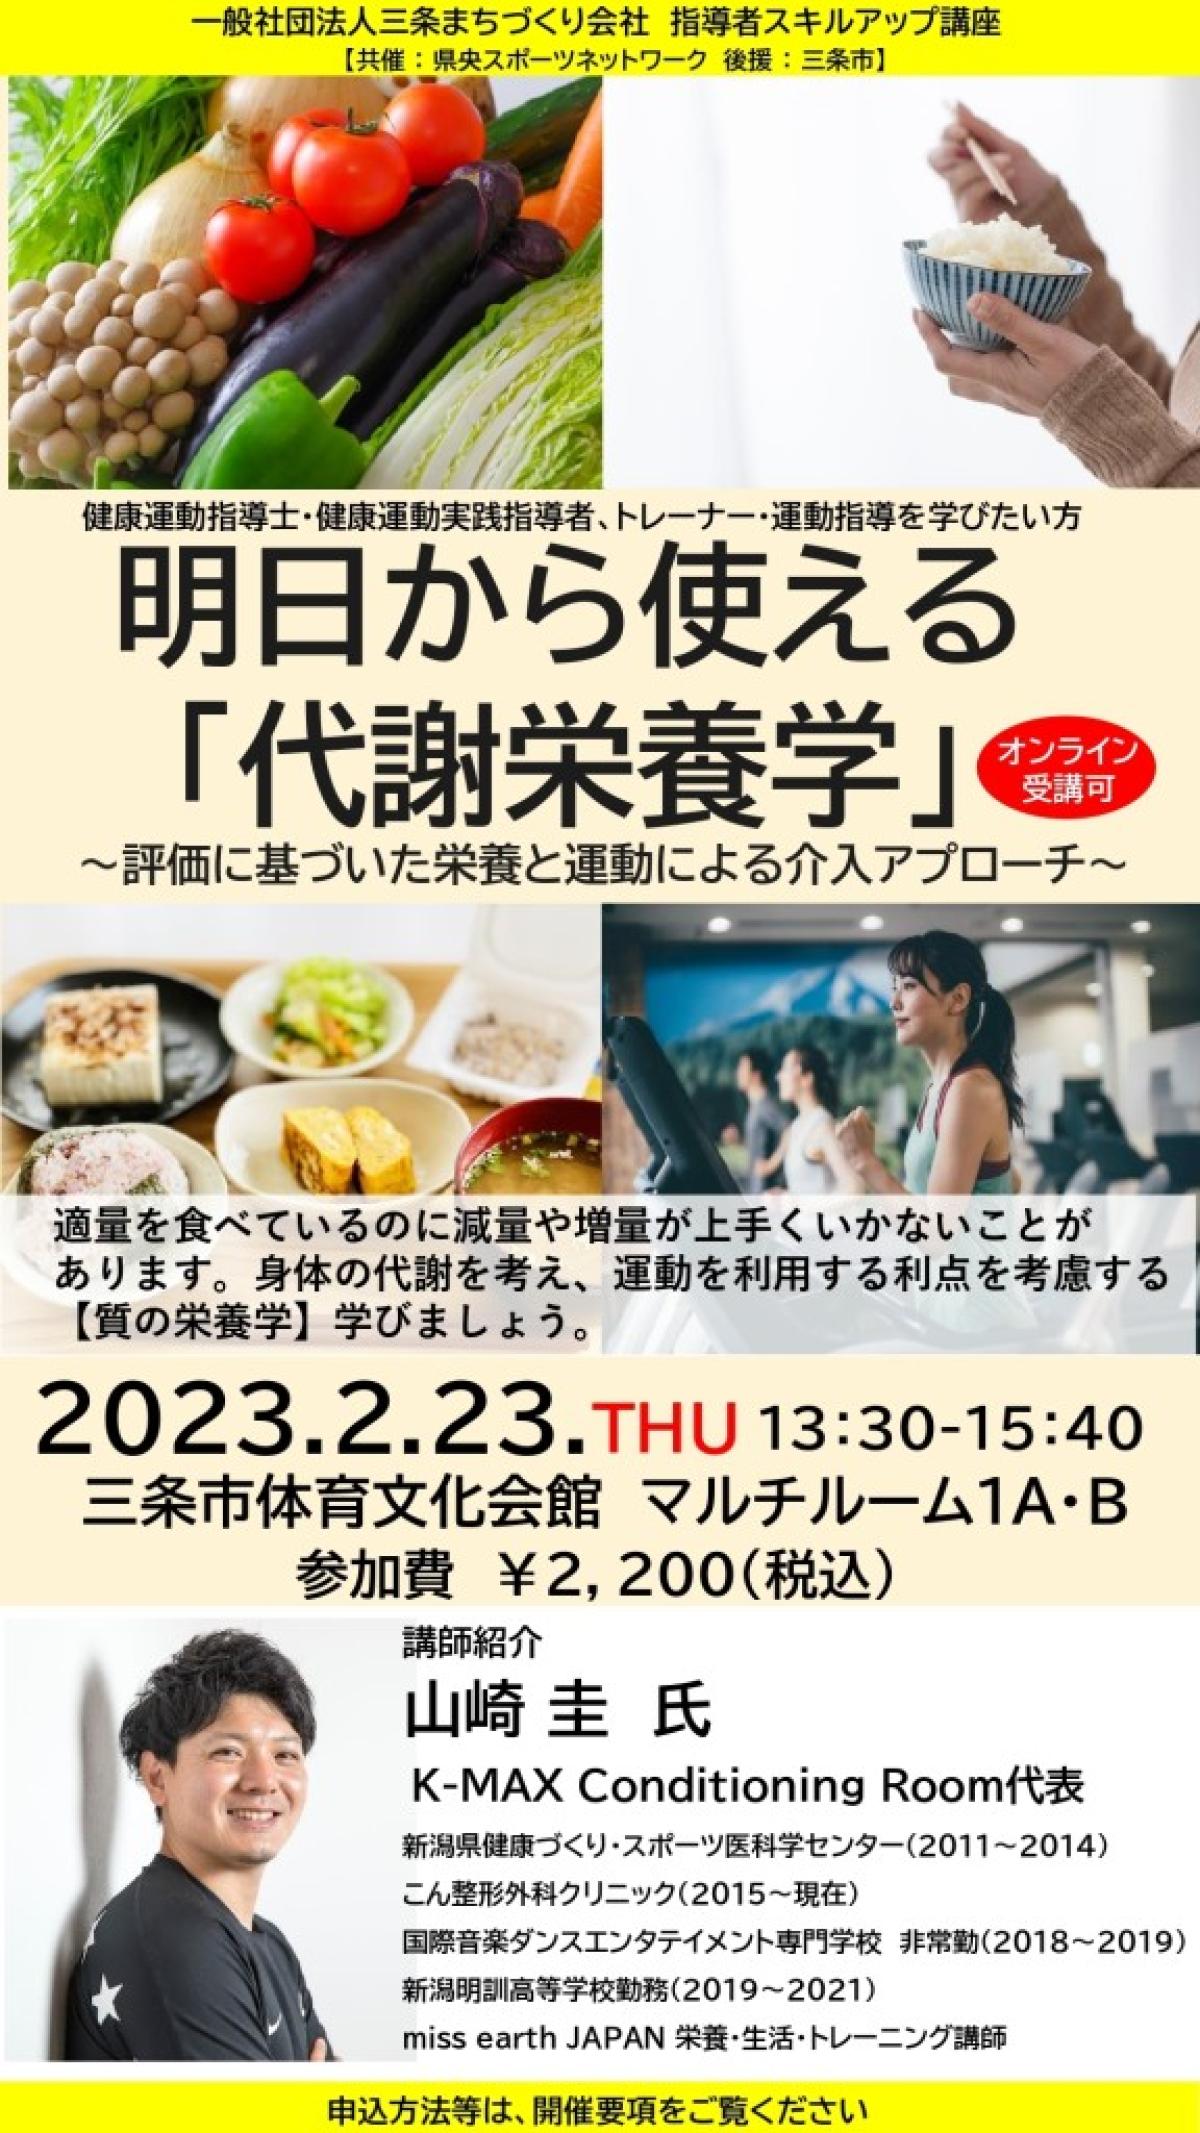 2月23日に山崎圭さんが栄養セミナーを開催されます！【栄養コンシェルジュ取得後のご活躍】